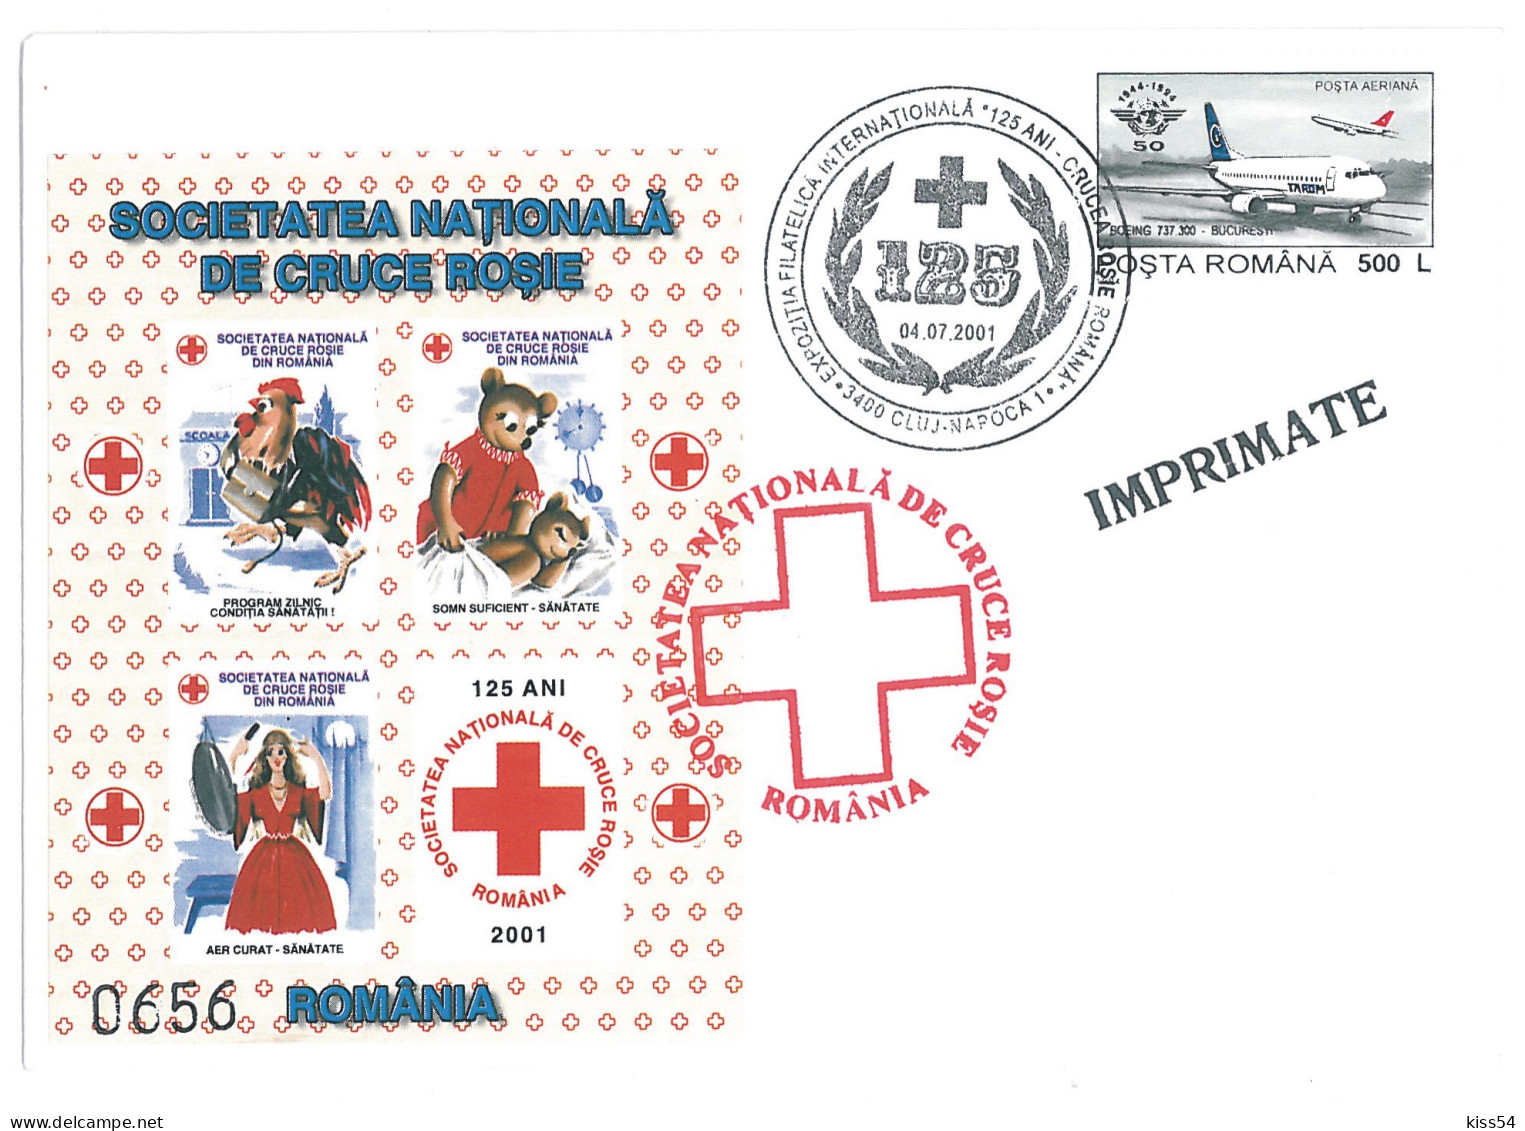 COV 87 - 306 RED CROSS, Romania - Cover - Used - 2005 - Cartes-maximum (CM)